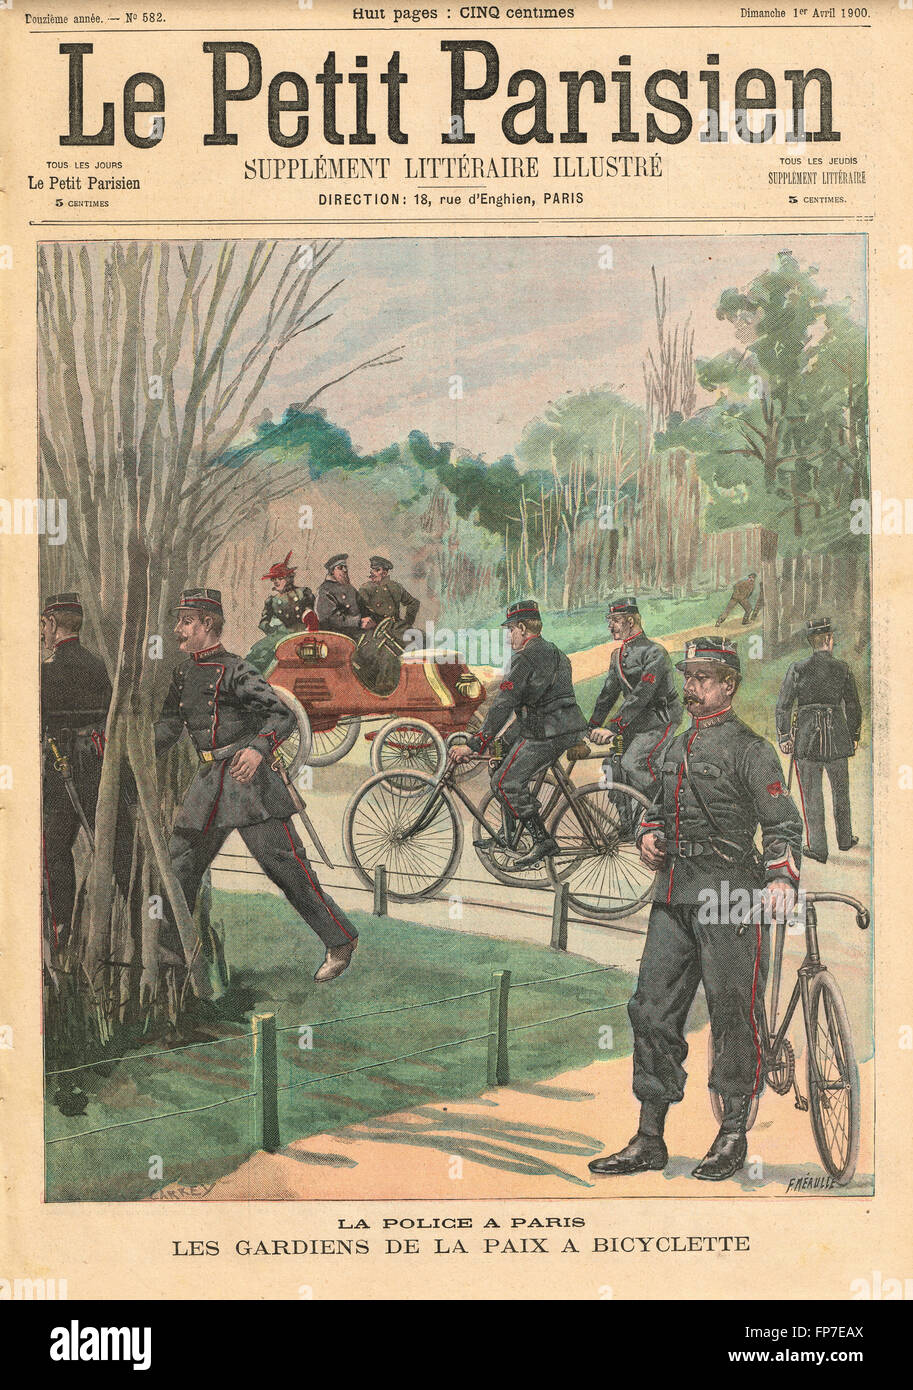 Polizia di Parigi sulle biciclette Francia 1900 squadra di risposta rapida stile inizio 20th secolo. Quotidiano francese illustrato le Petit Parisien illustrazione Foto Stock